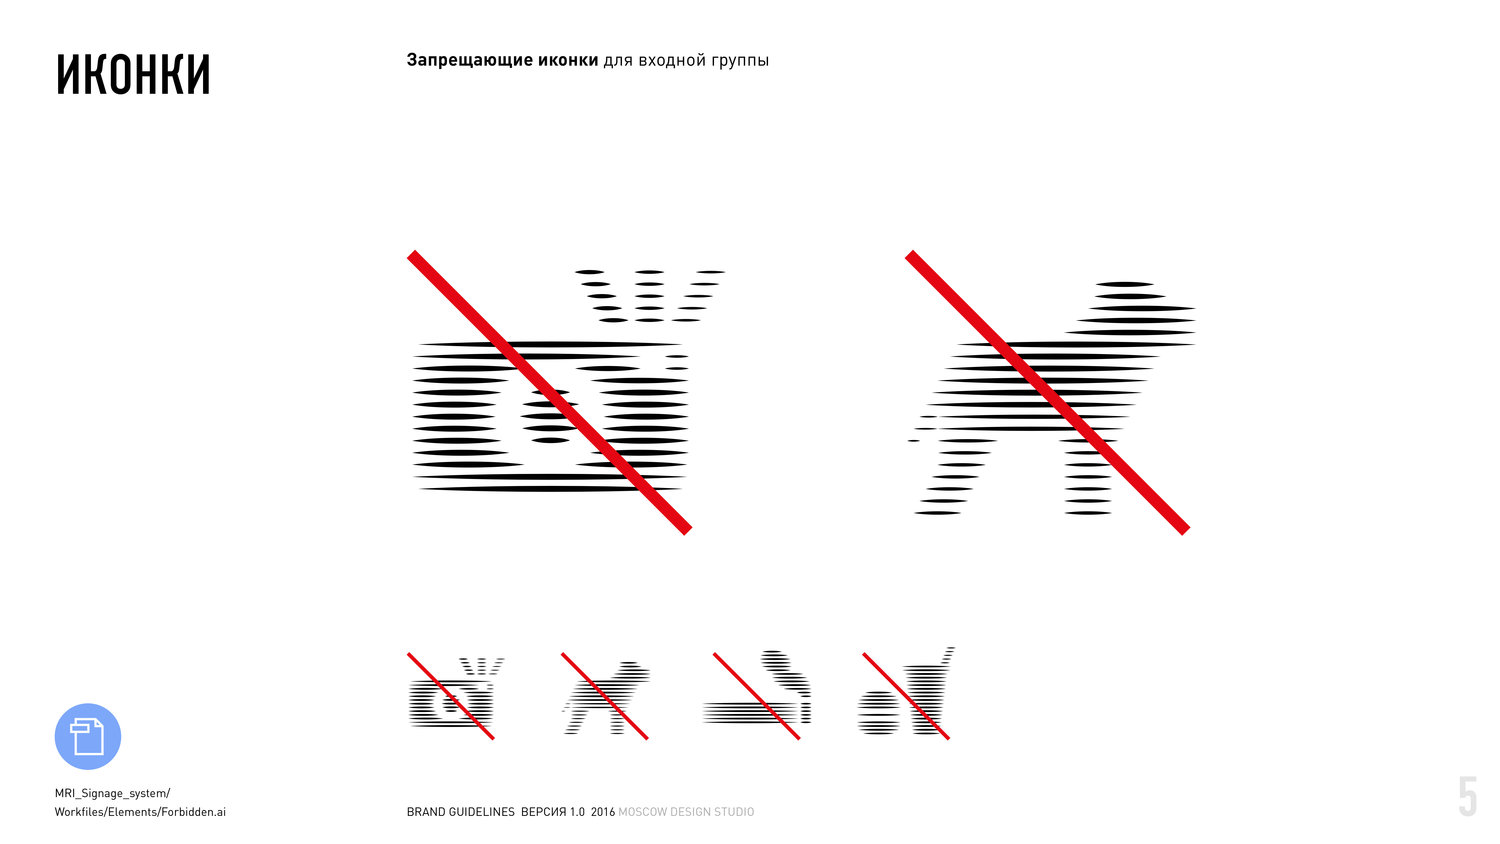 俄罗斯印象主义博物馆导视系统设计©CHEMERIS POLINA